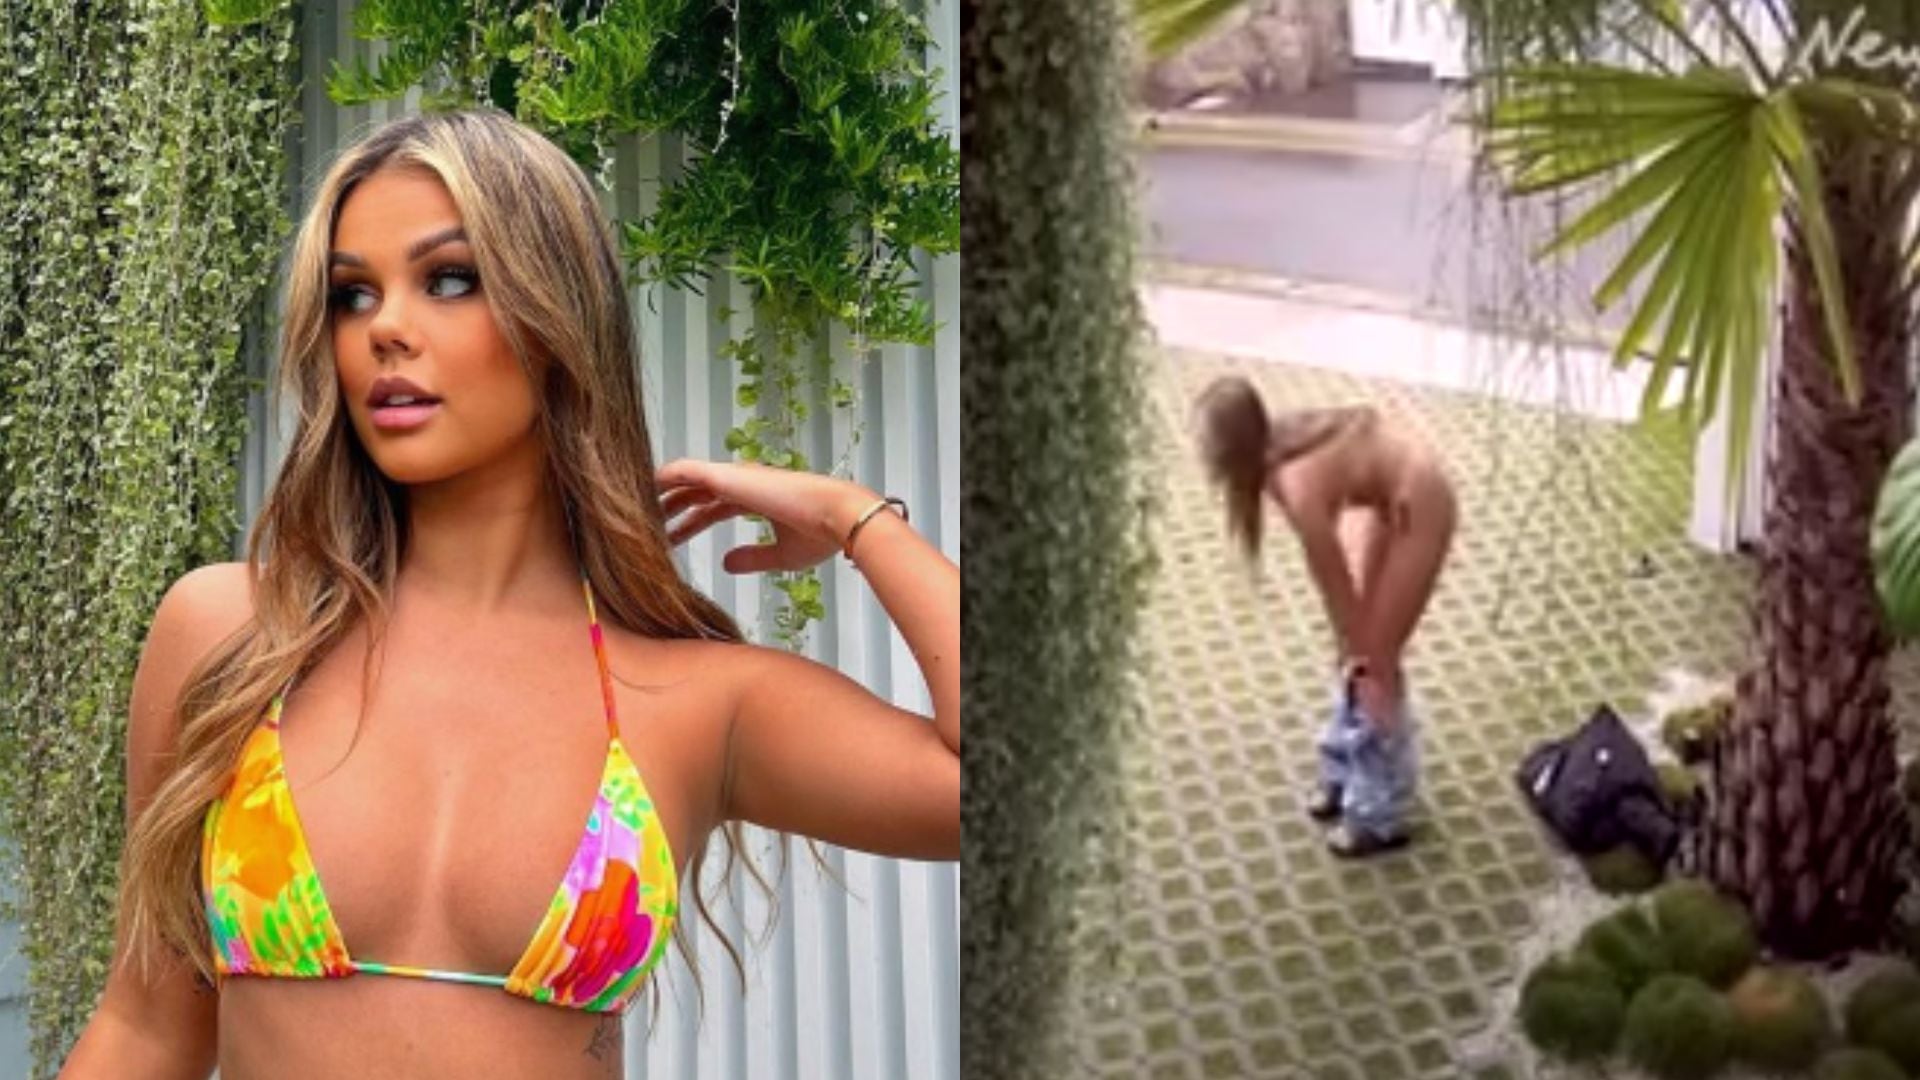 Influencer es captada en cámara posando en bikini frente a la mansión de un millonario.